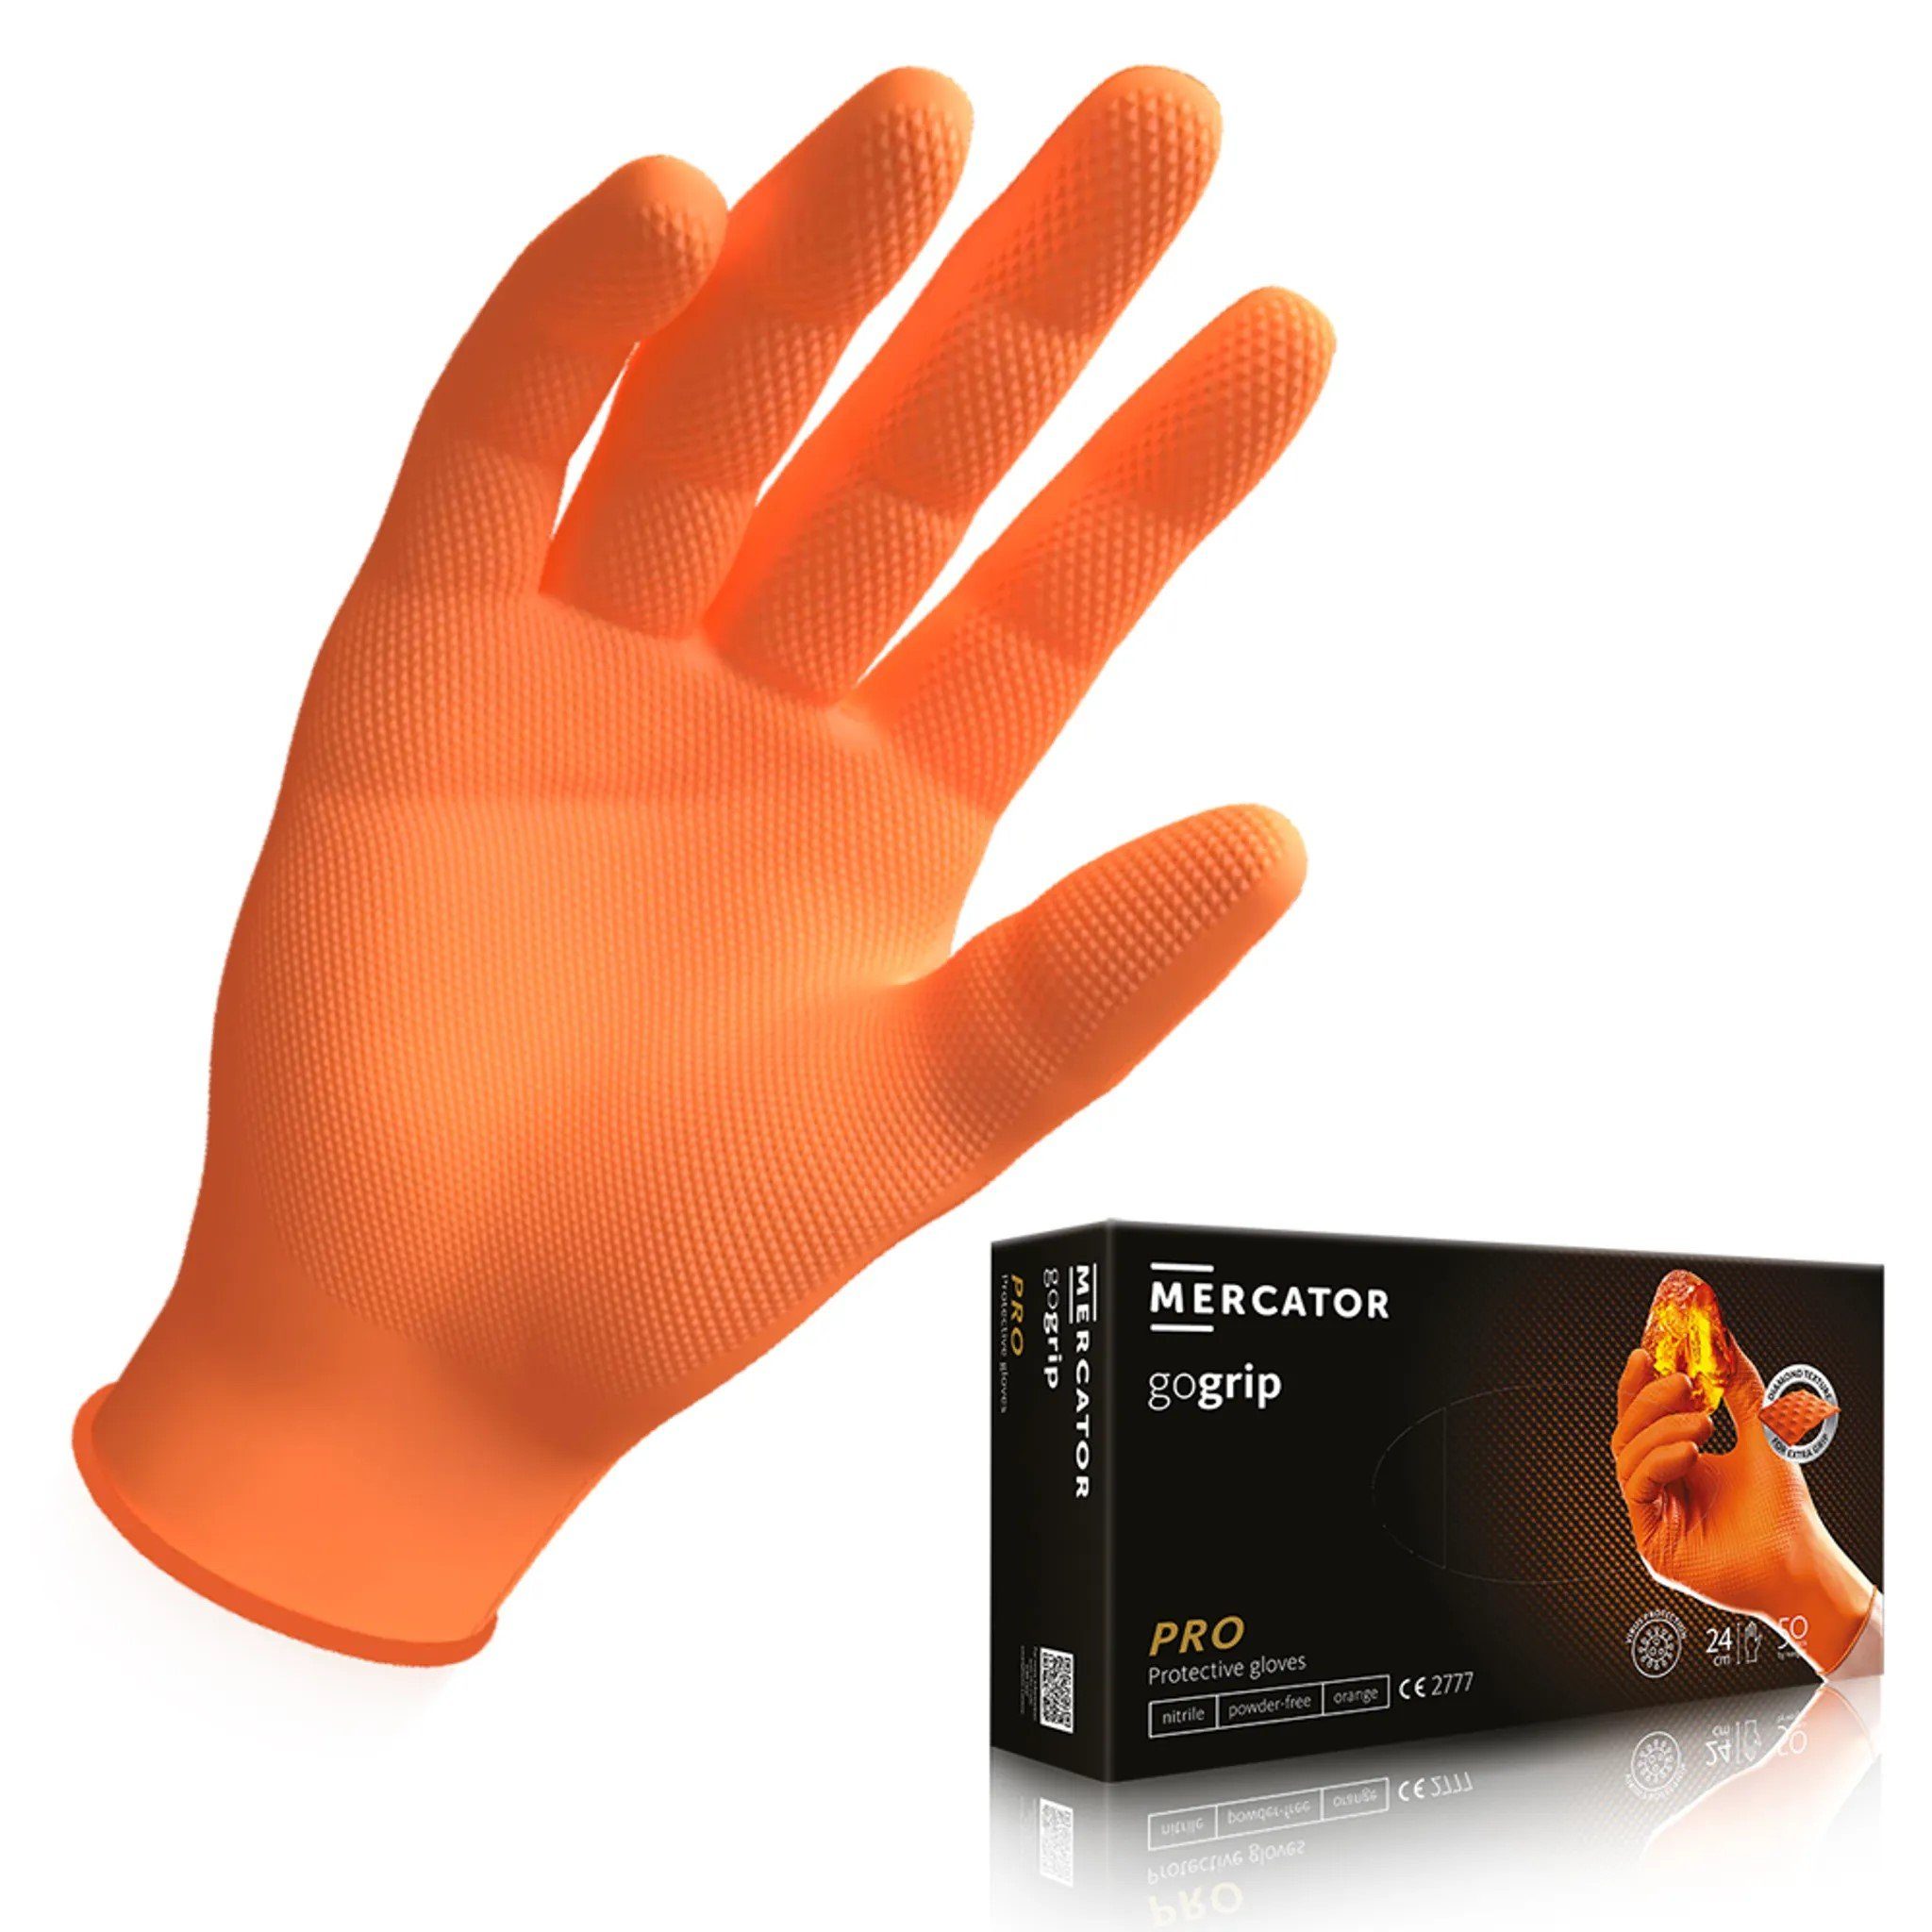 MERCATOR MEDICAL Einweghandschuhe MERCATOR GoGrip Pro Premium Nitrilhandschuhe verschiedene Farben, S-XL aufgeraute Oberfläche für mehr Grip Orange